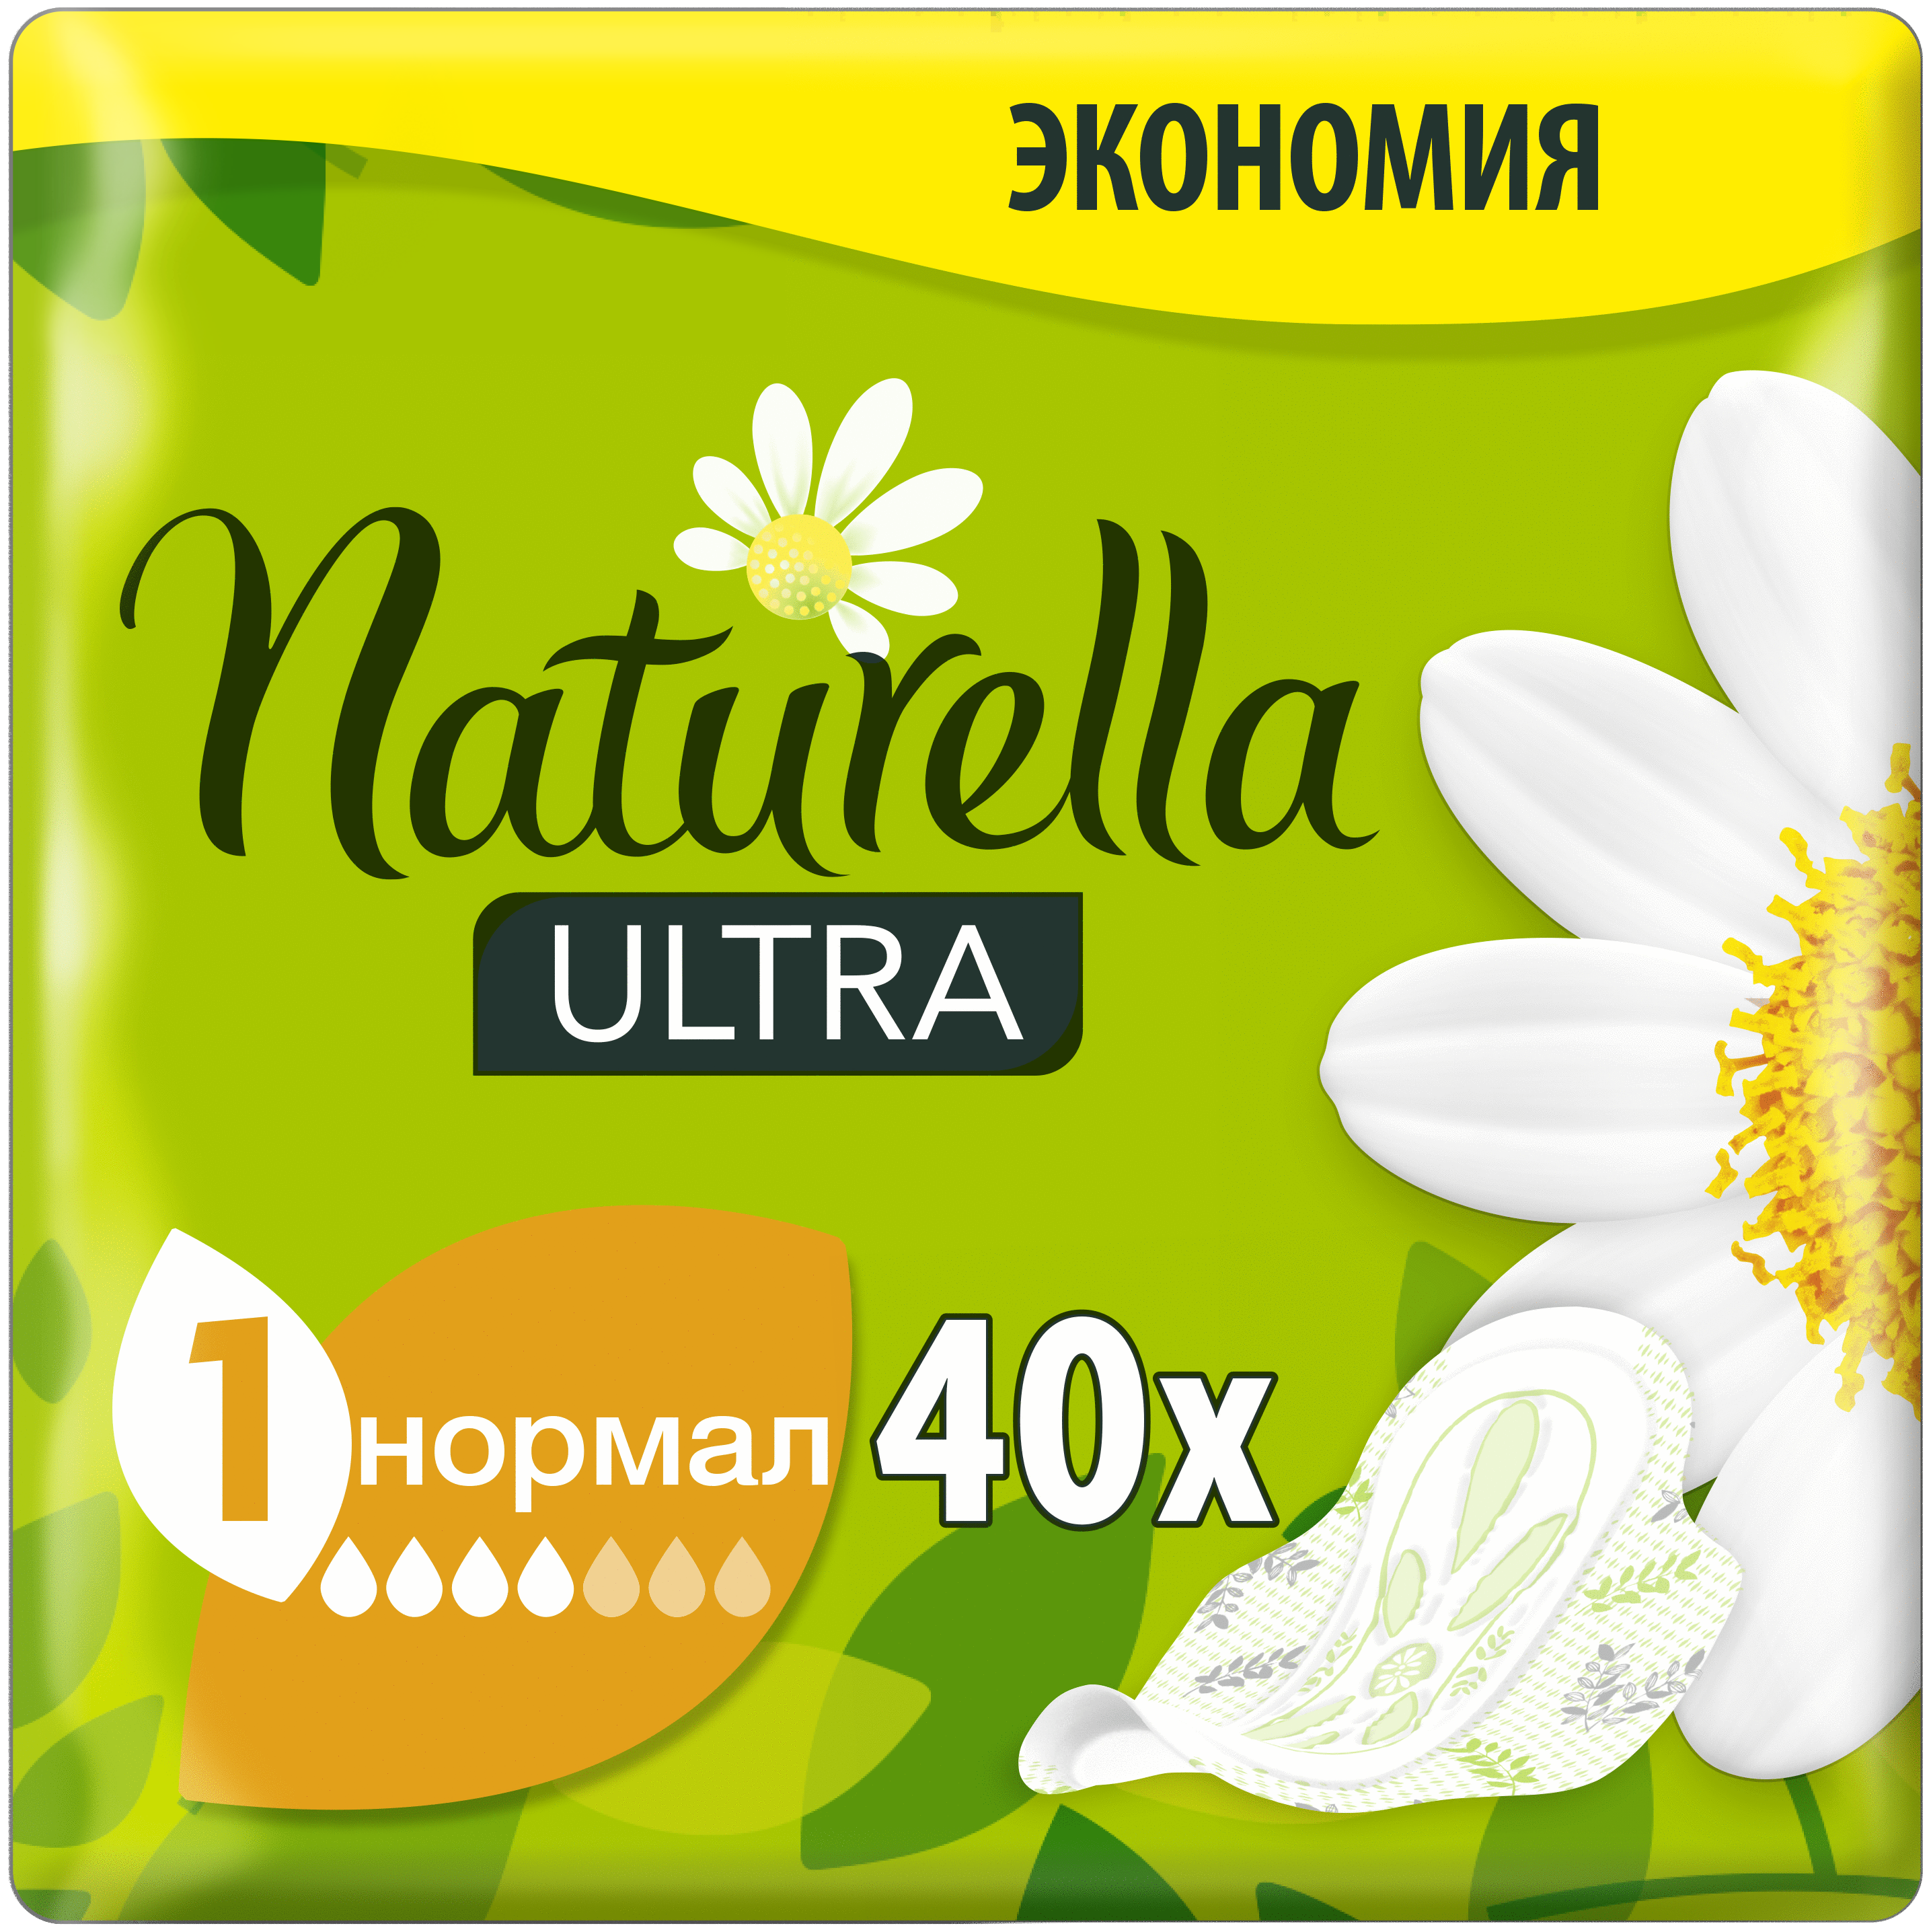 Женские гигиенические ароматизированные Прокладки с крылышками Naturella Ultra Нормал, 40 шт.